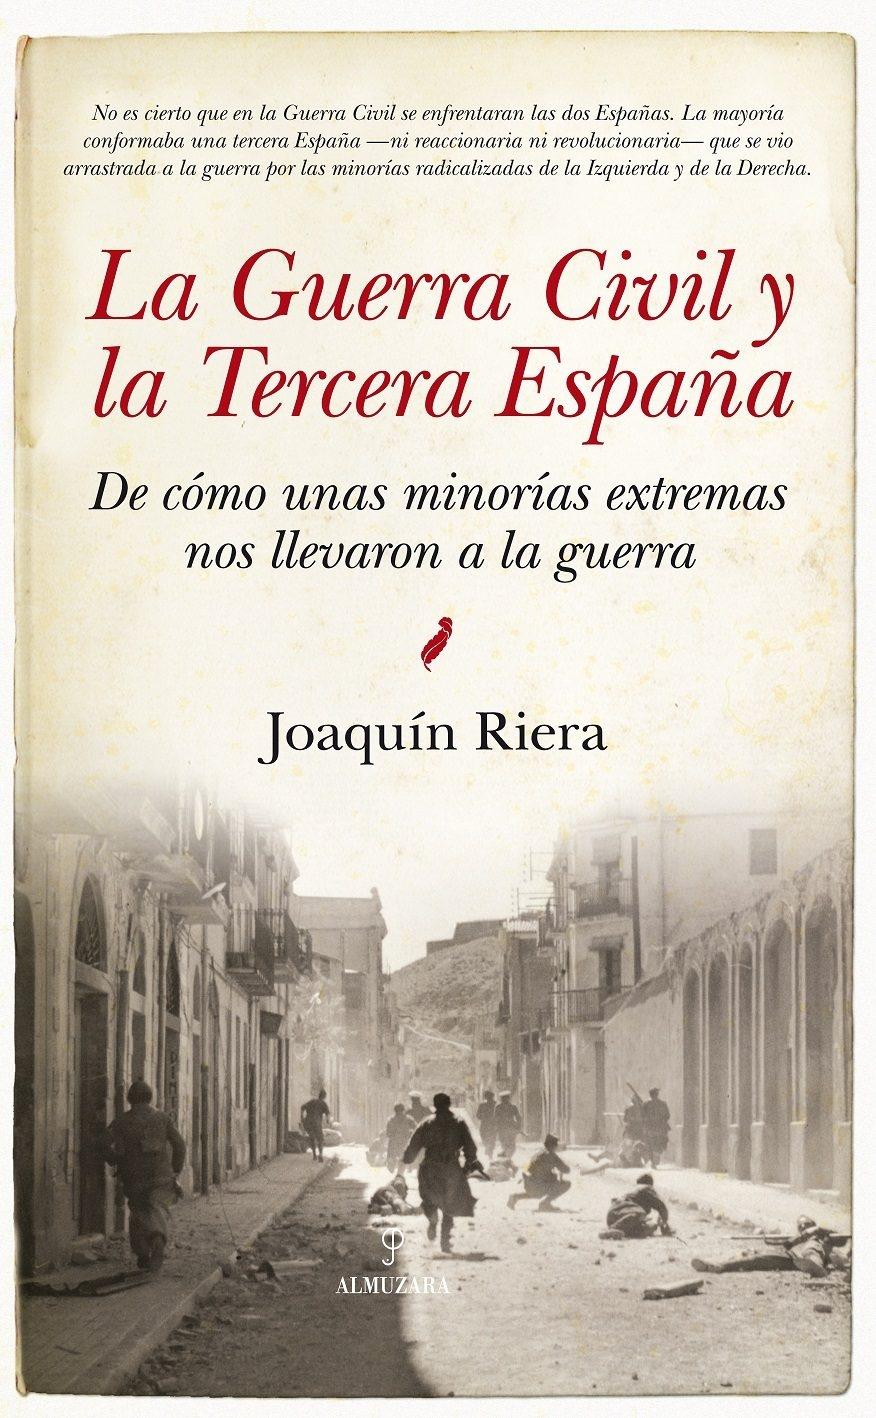 Guerra Civil y la Tercera España "De Cómo Unas Minorías Extremas nos Llevaron a la Guerra". 